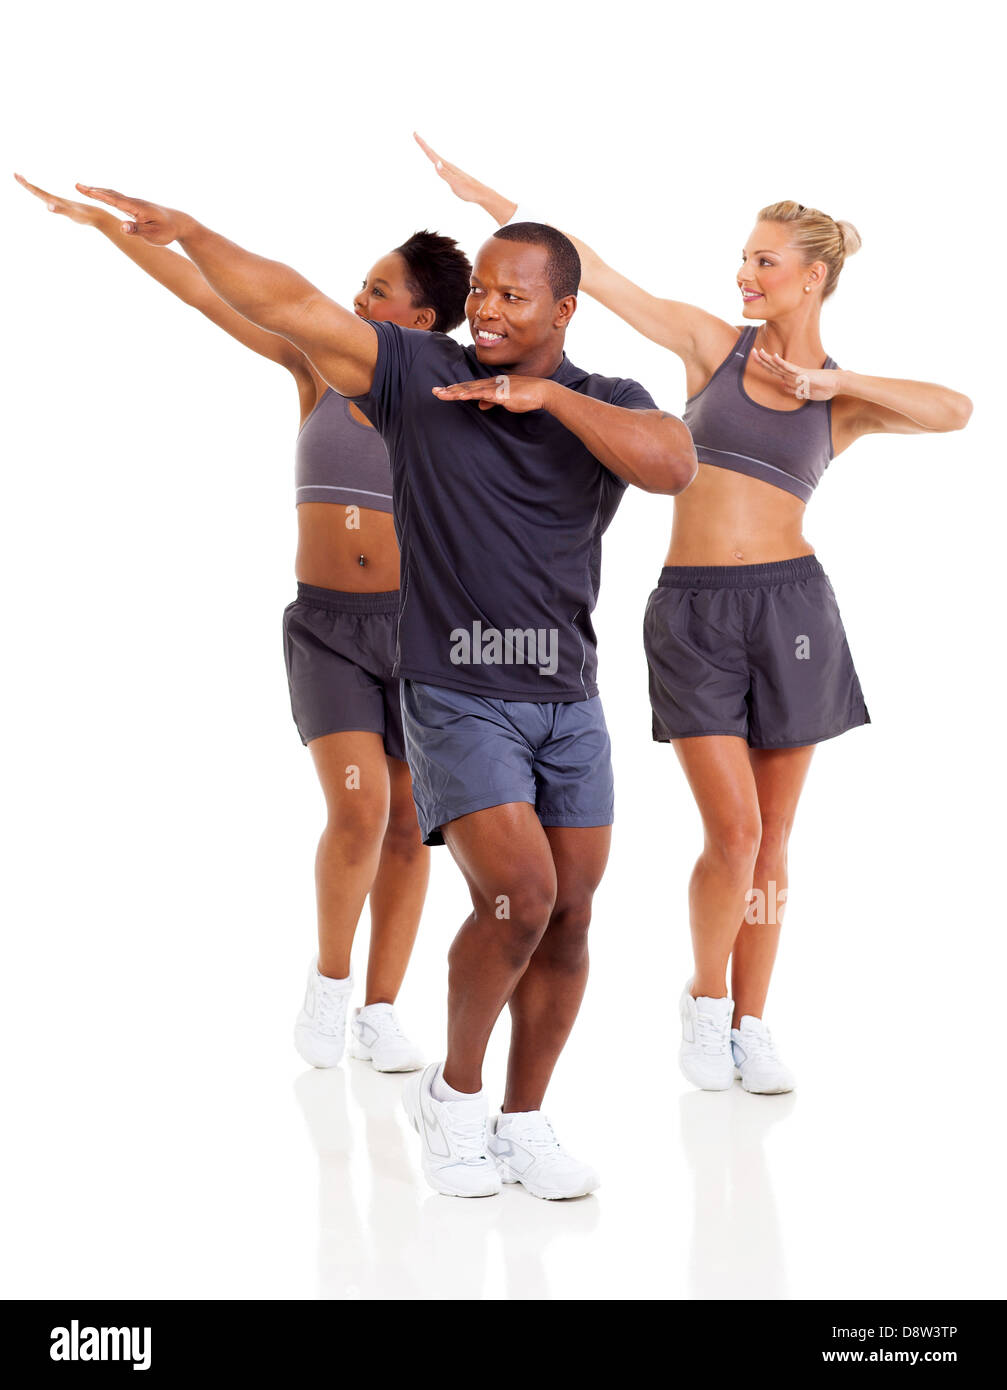 Gruppe von gesunden Menschen trainieren, isoliert auf weißem Hintergrund Stockfoto